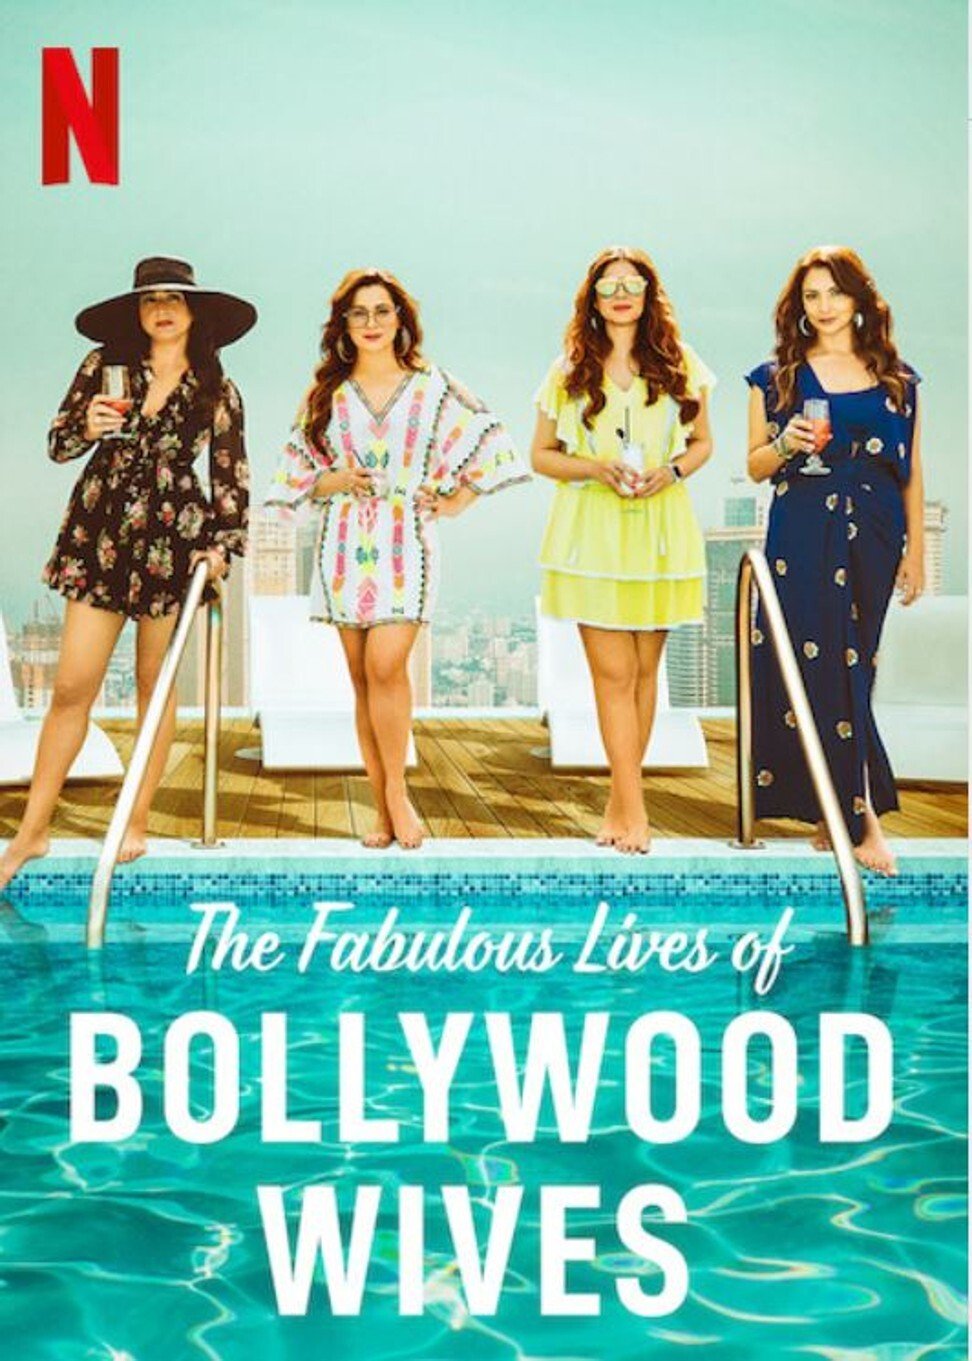 ดูหนังออนไลน์ Fabulous Lives of Bollywood Wives Season 1 Ep02 แฟบูลูส ไลฟ์ ออฟ บอลลีวู๊ด ไวส์ท ปี1 ตอนที่2